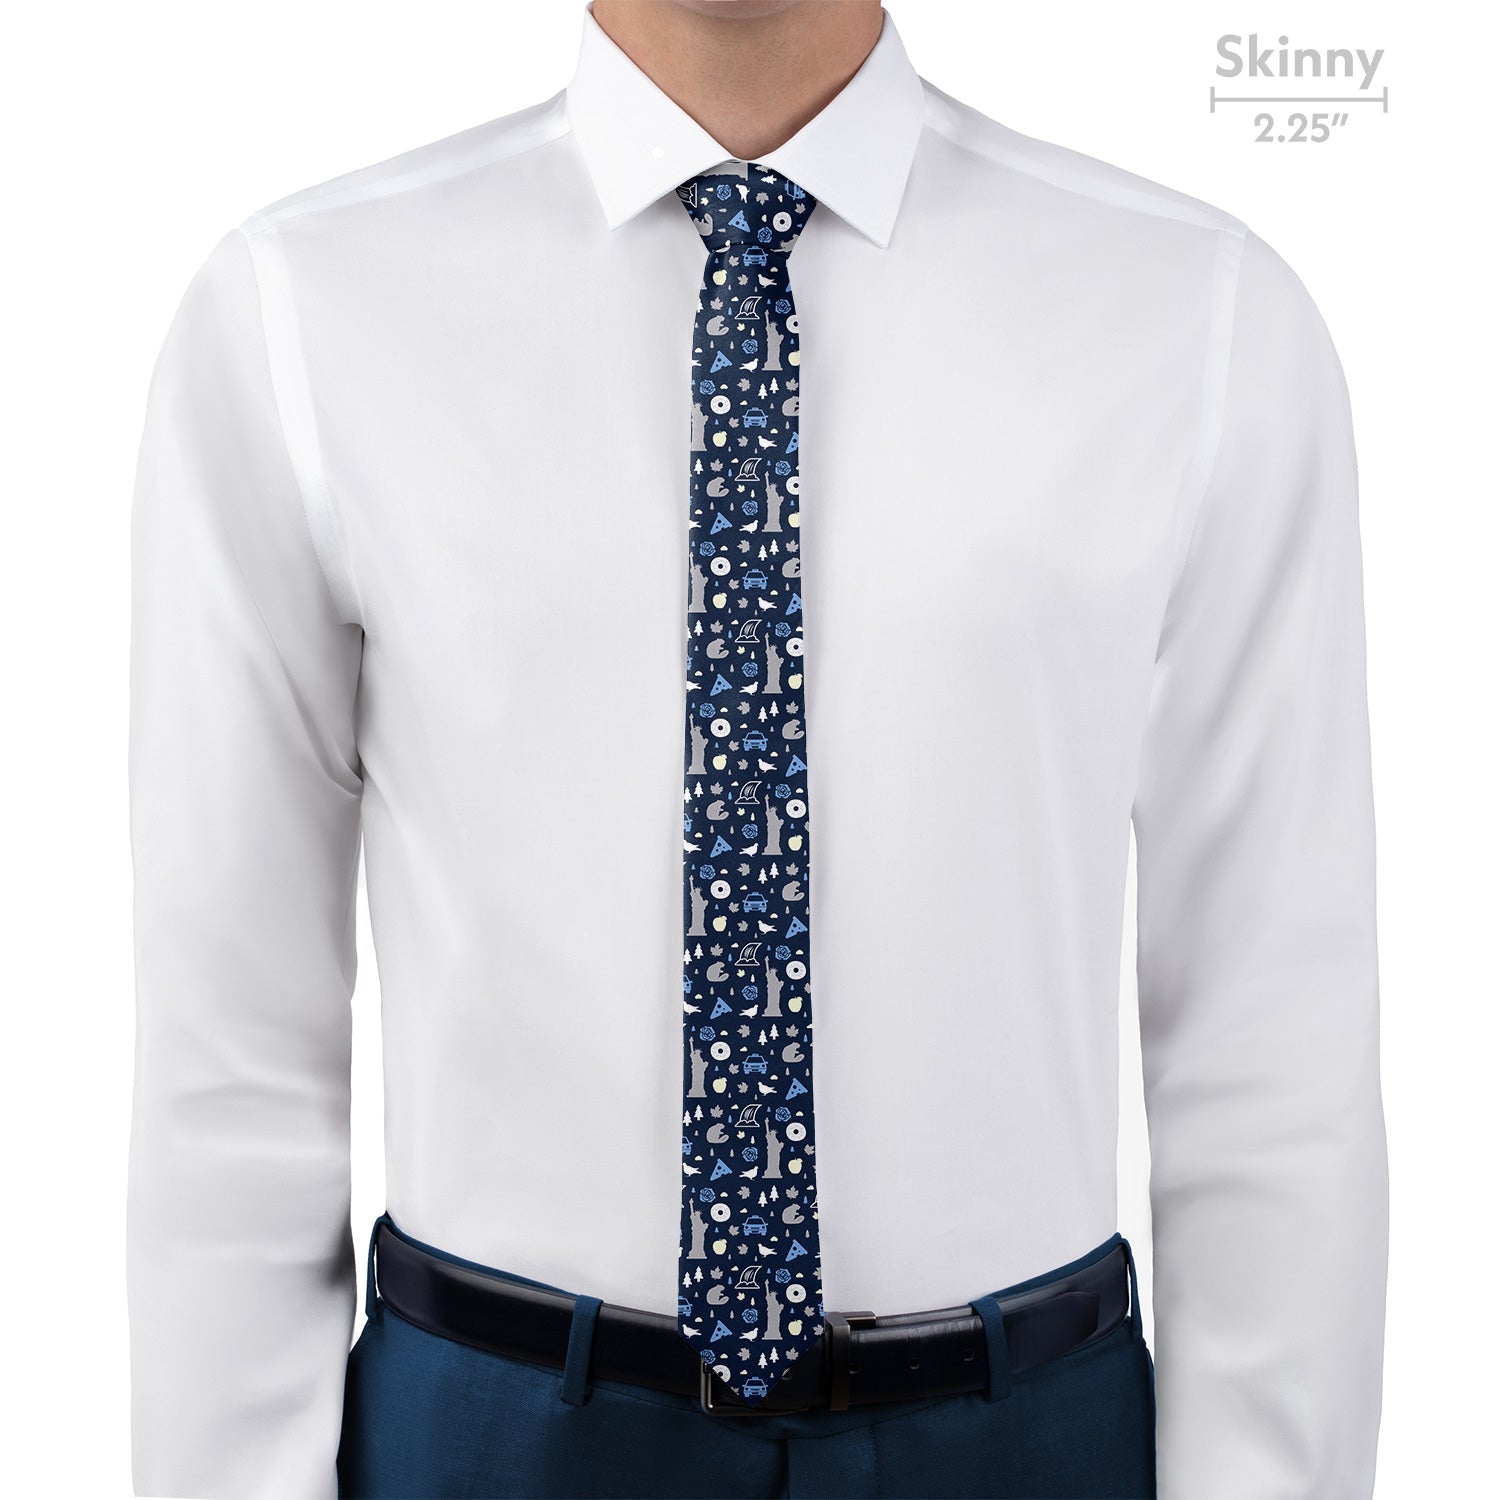 New York State Heritage Necktie - Skinny - Knotty Tie Co.